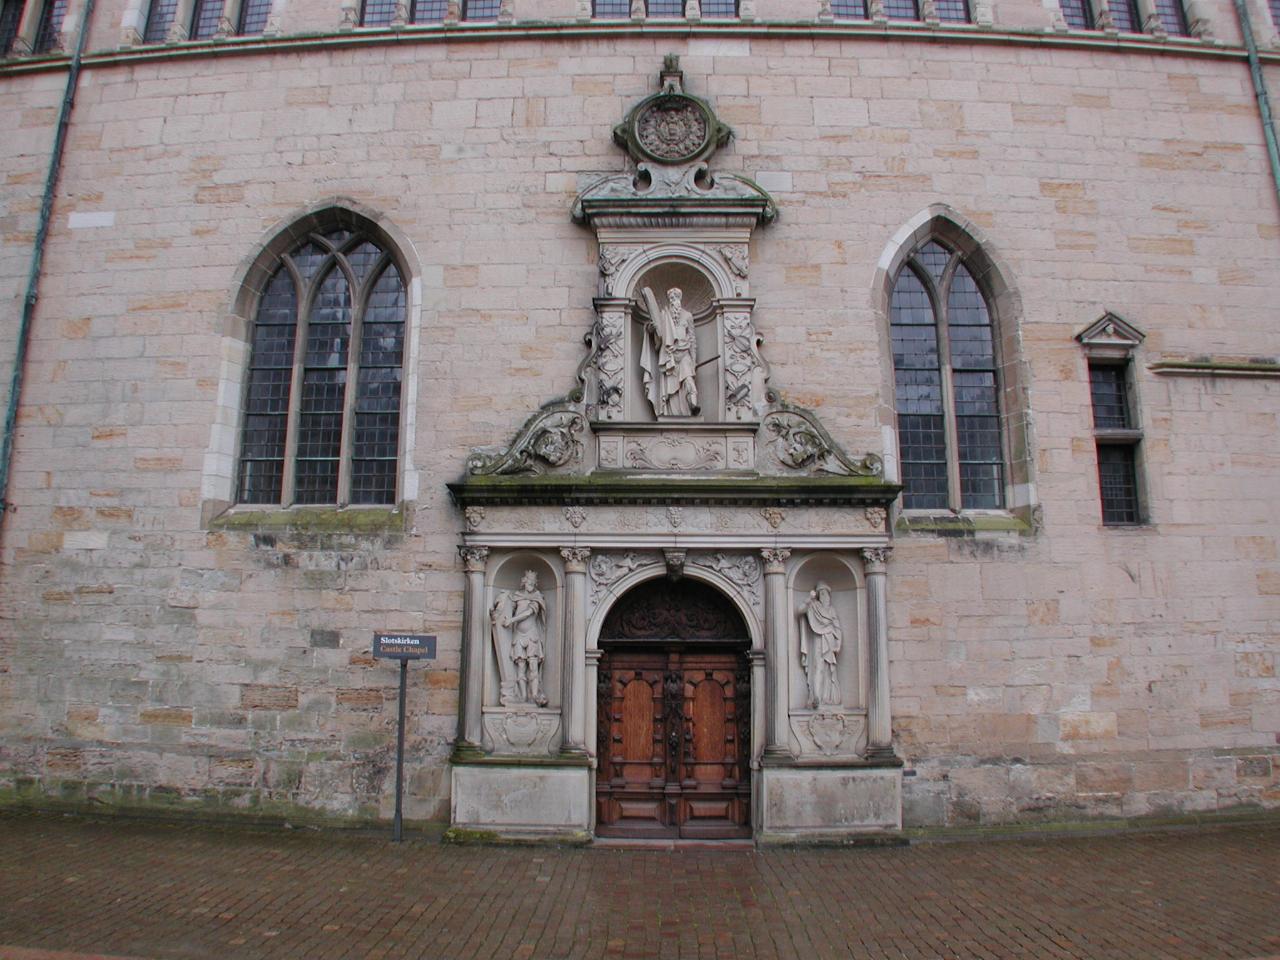 KPLU Viking Jazz: Chapel entrance in Courtyard of Helsingør Slot (Castle)